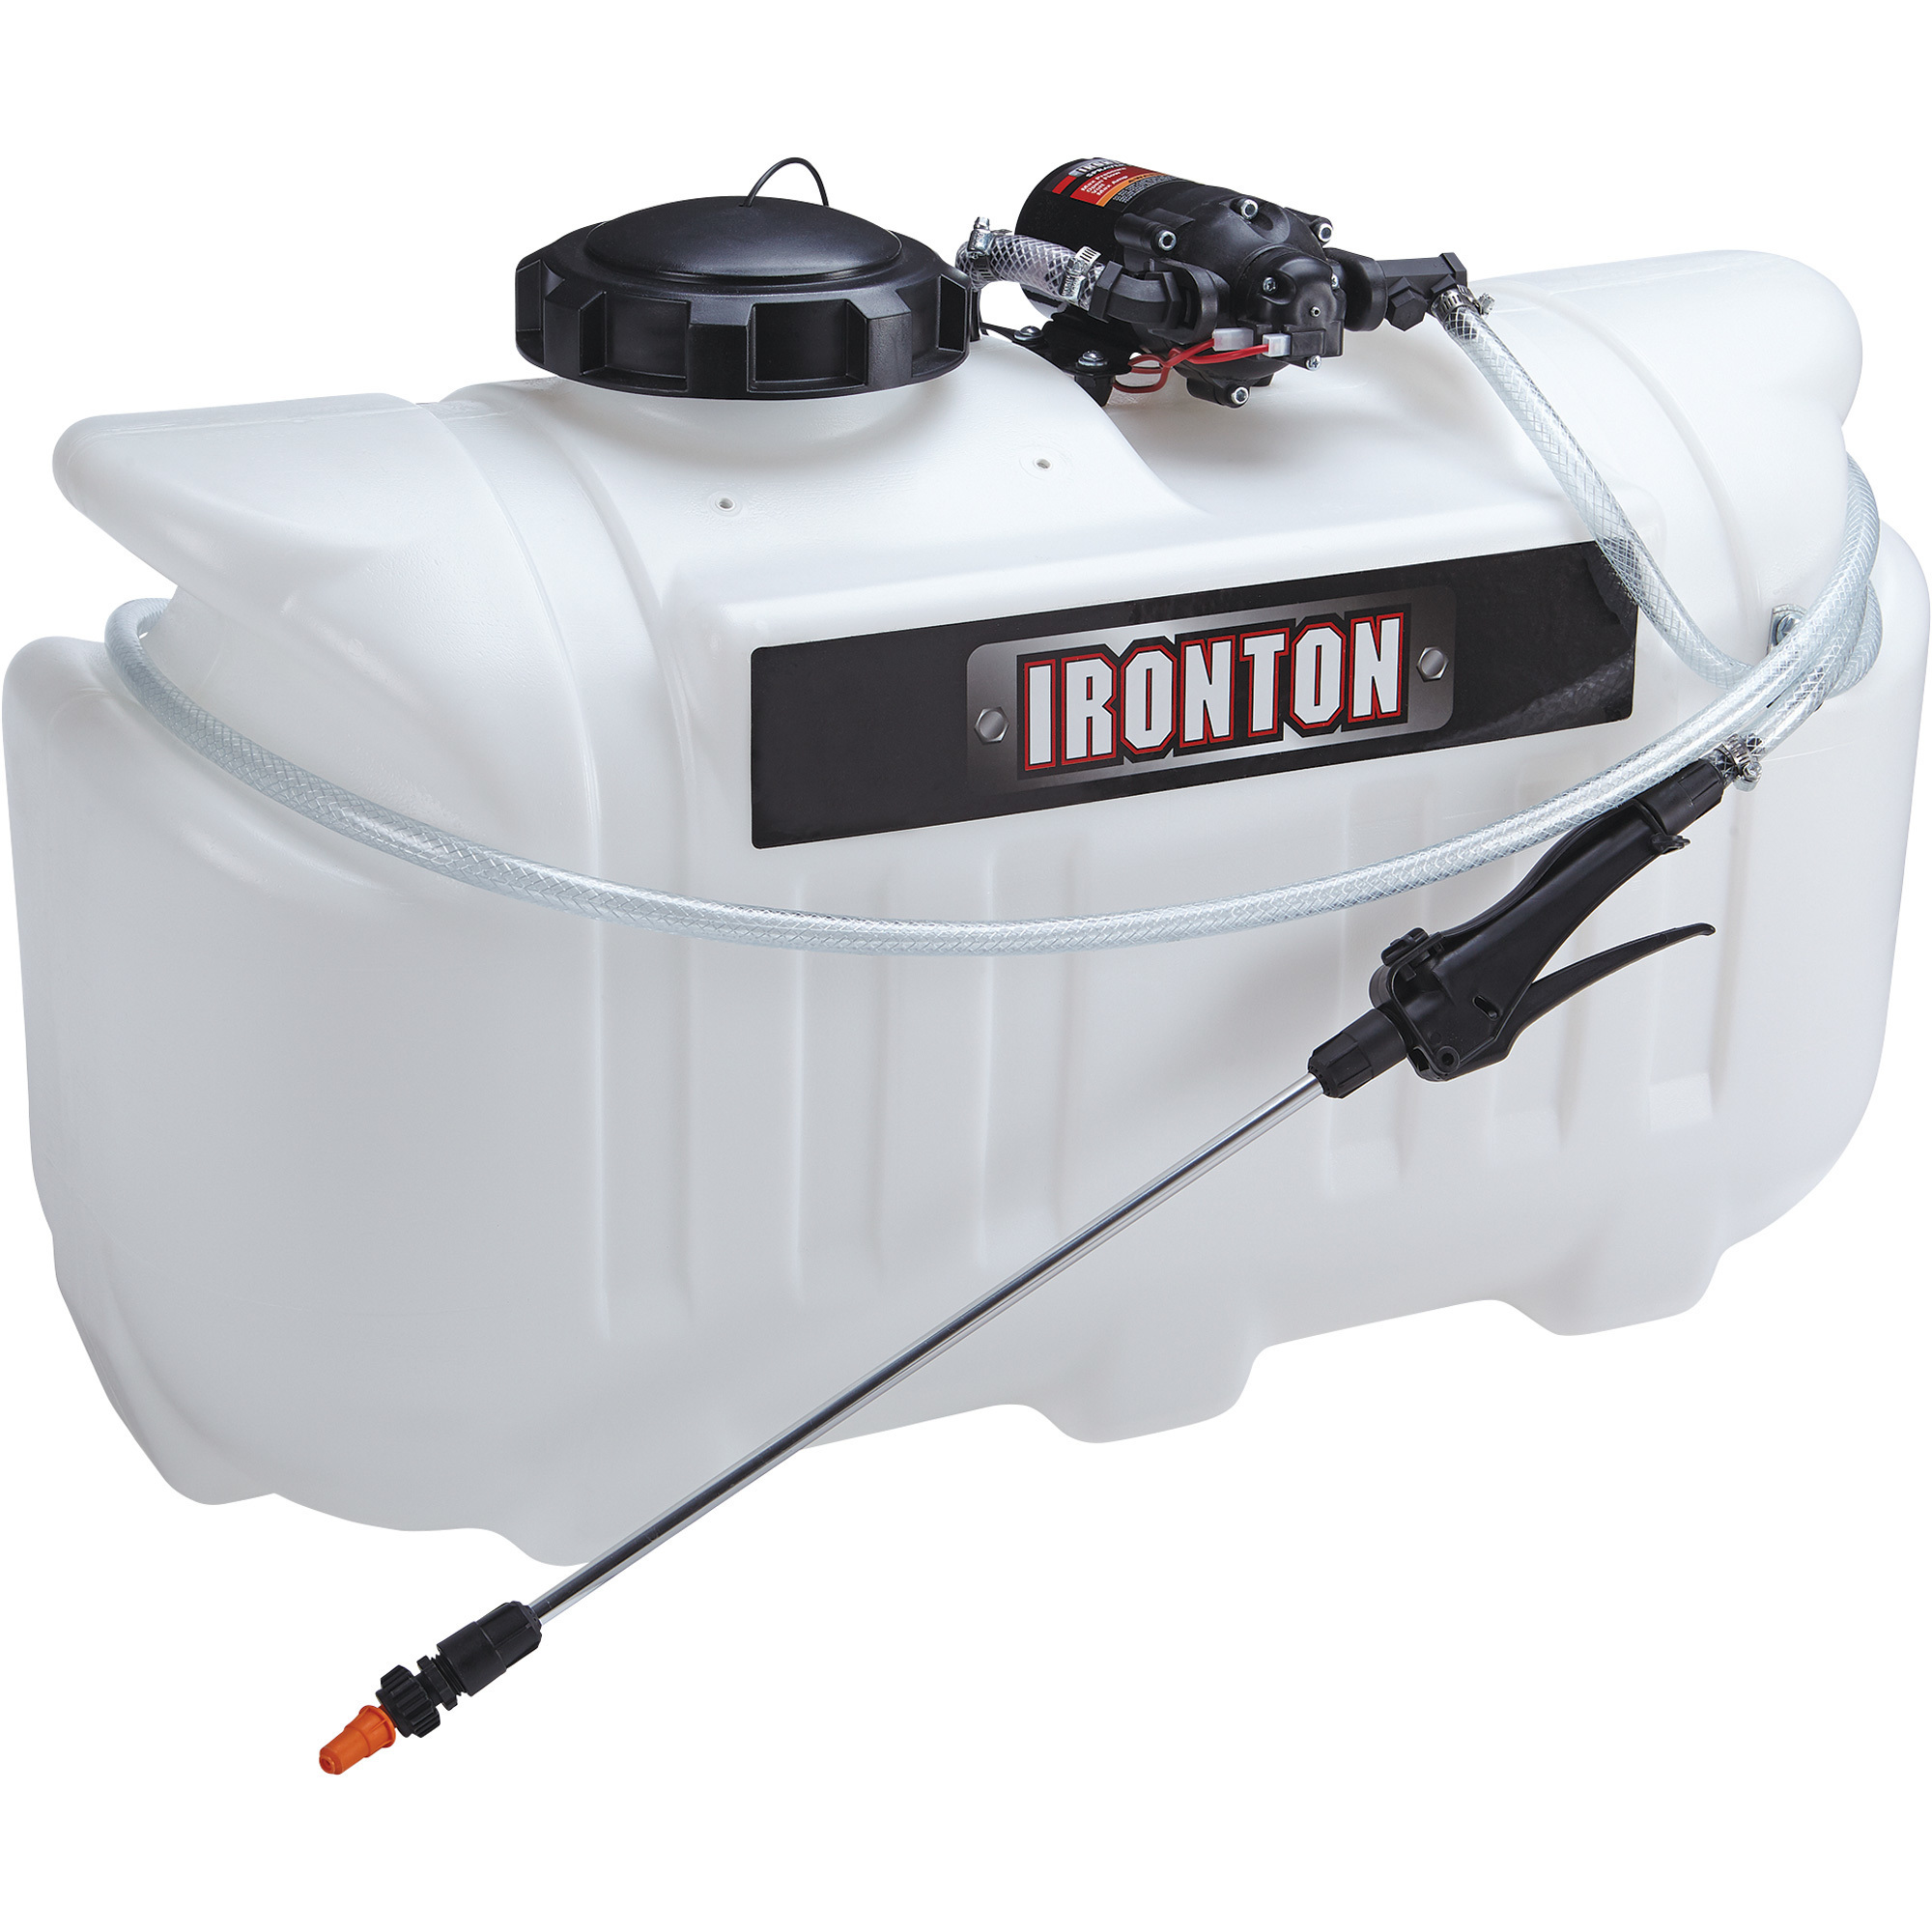 Ironton ATV Spot Sprayer â 26-Gallon Capacity, 2.1 GPM, 12 Volt